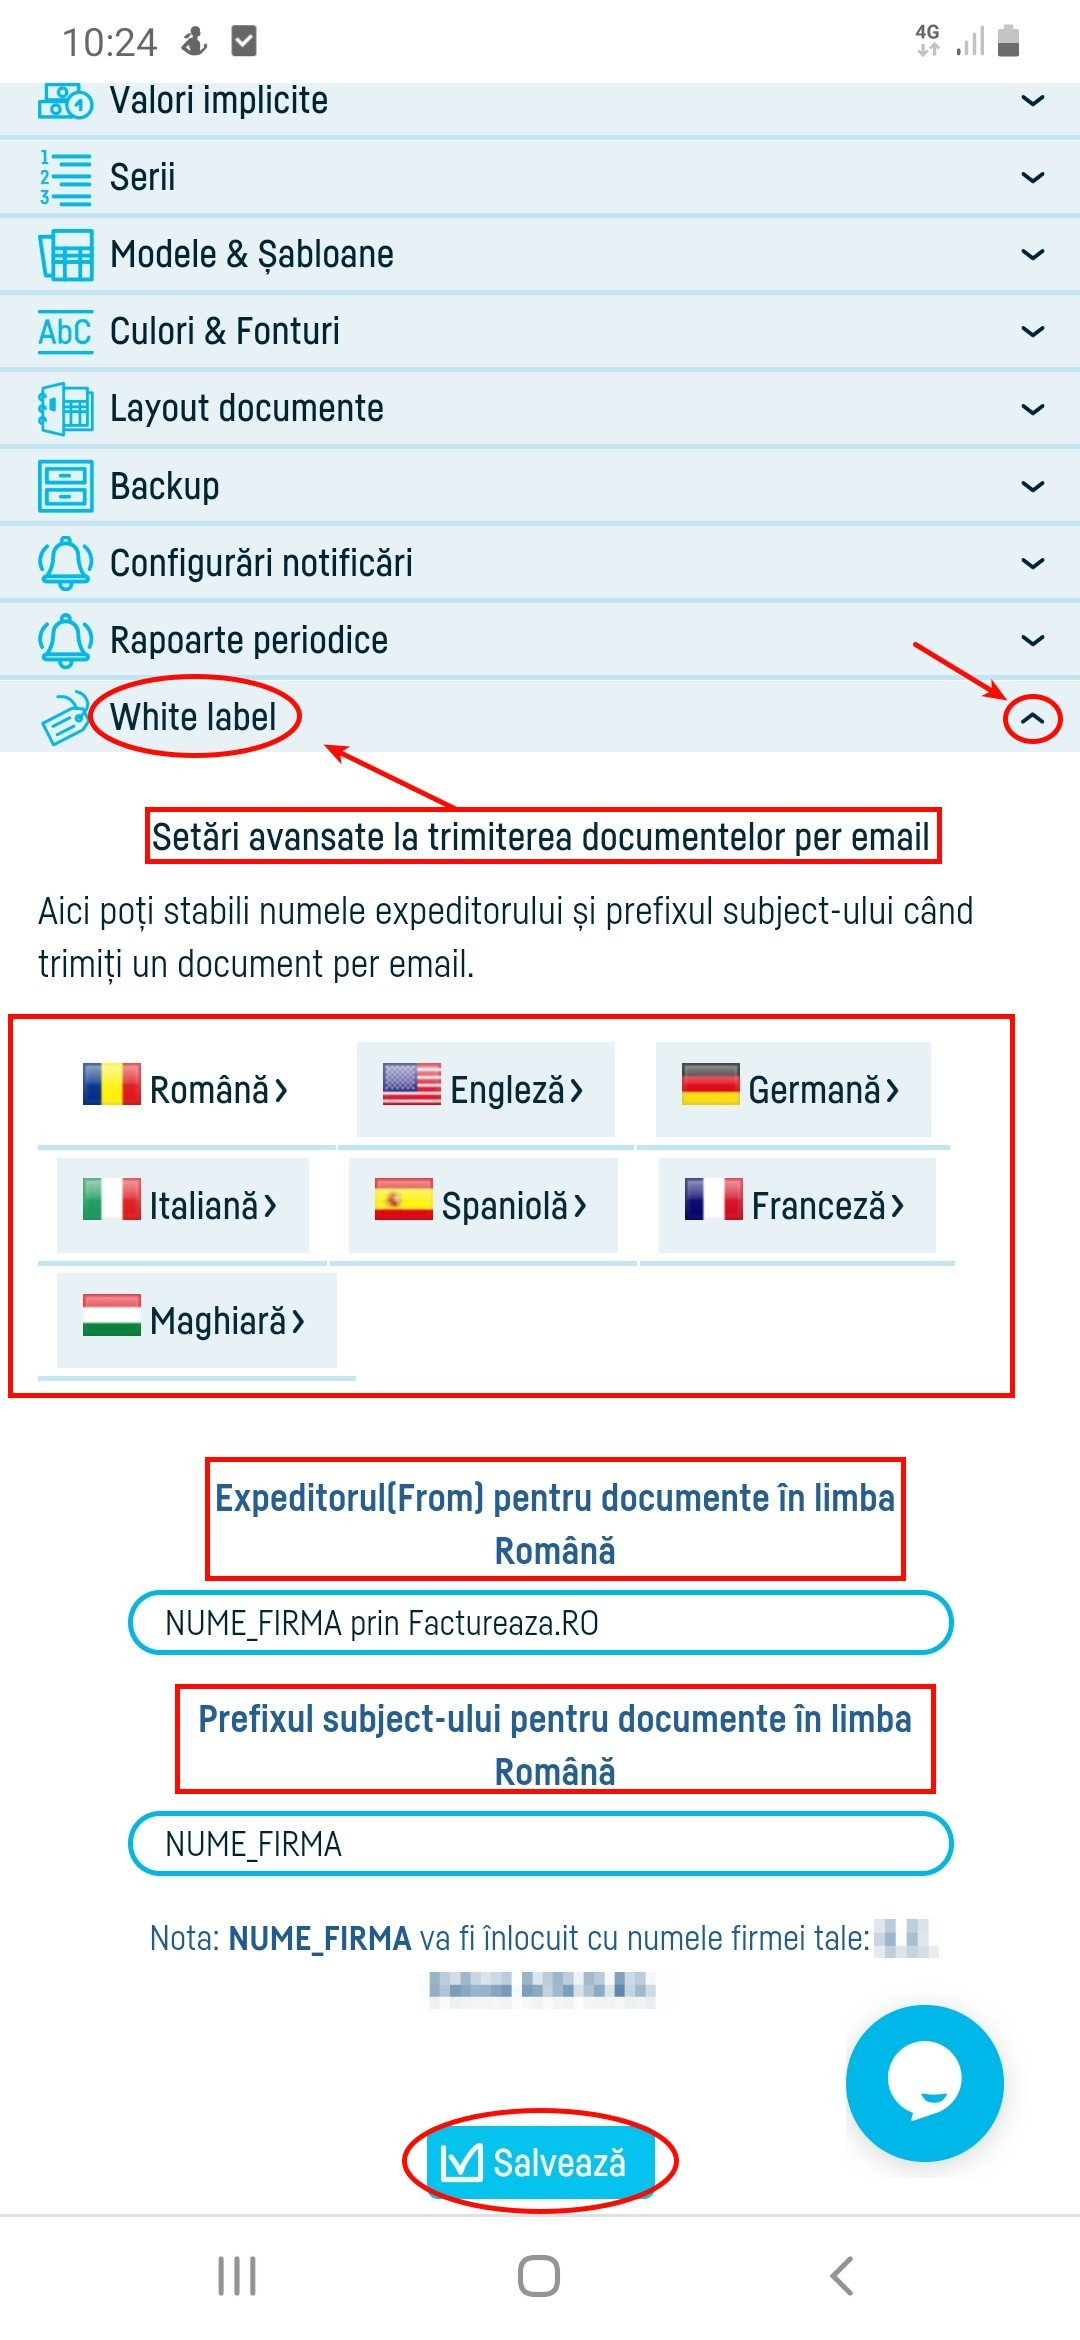 Setări avansate la trimiterea documentelor pe email - pasul 2